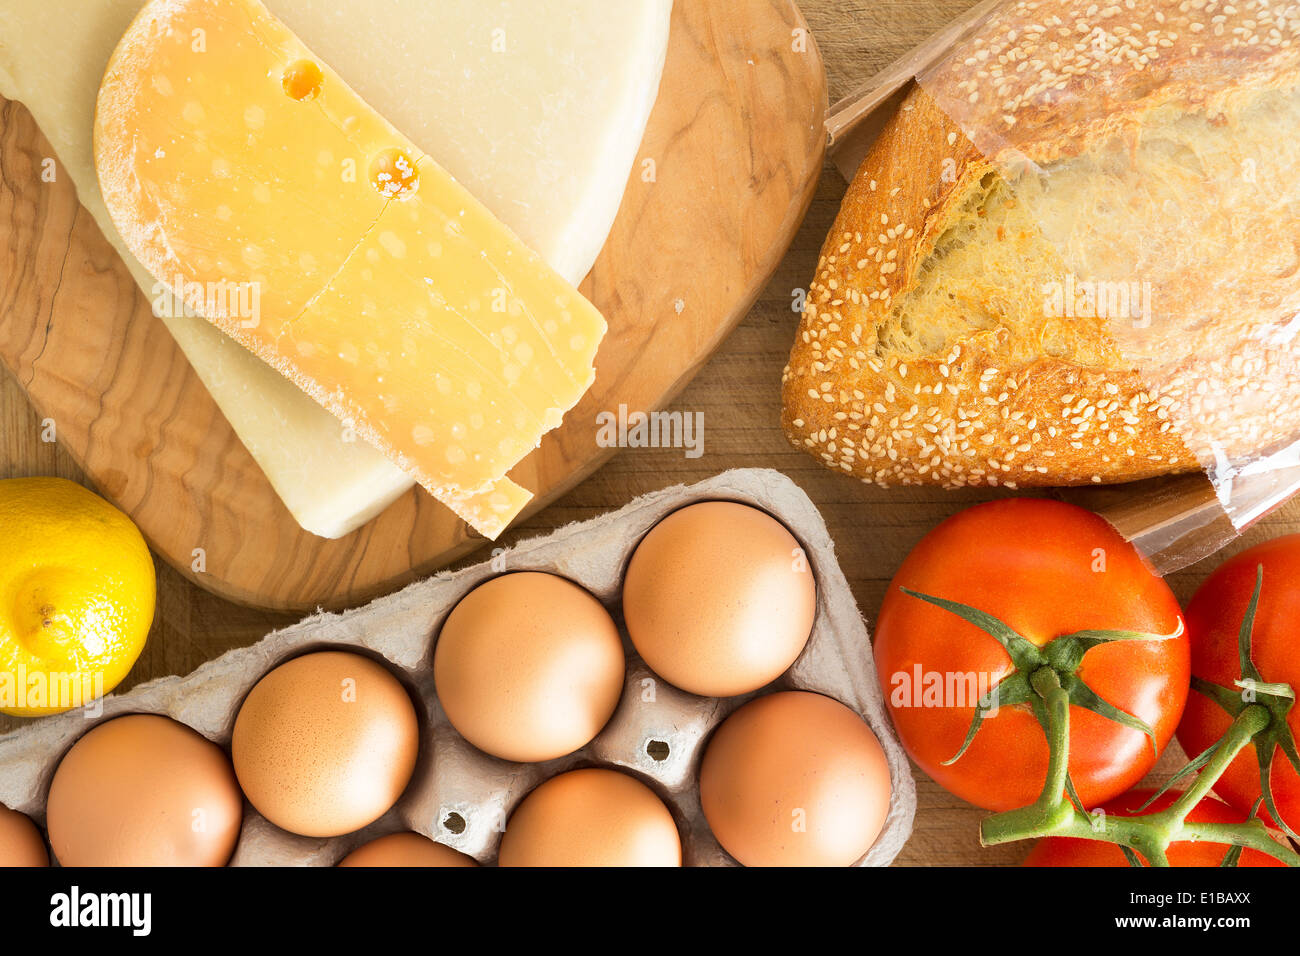 Draufsicht auf frische Lebensmittel in der Küche mit einem Karton Karton Freilandhaltung Eiern, Traube Tomaten am Rebstock, Käse, Stockfoto